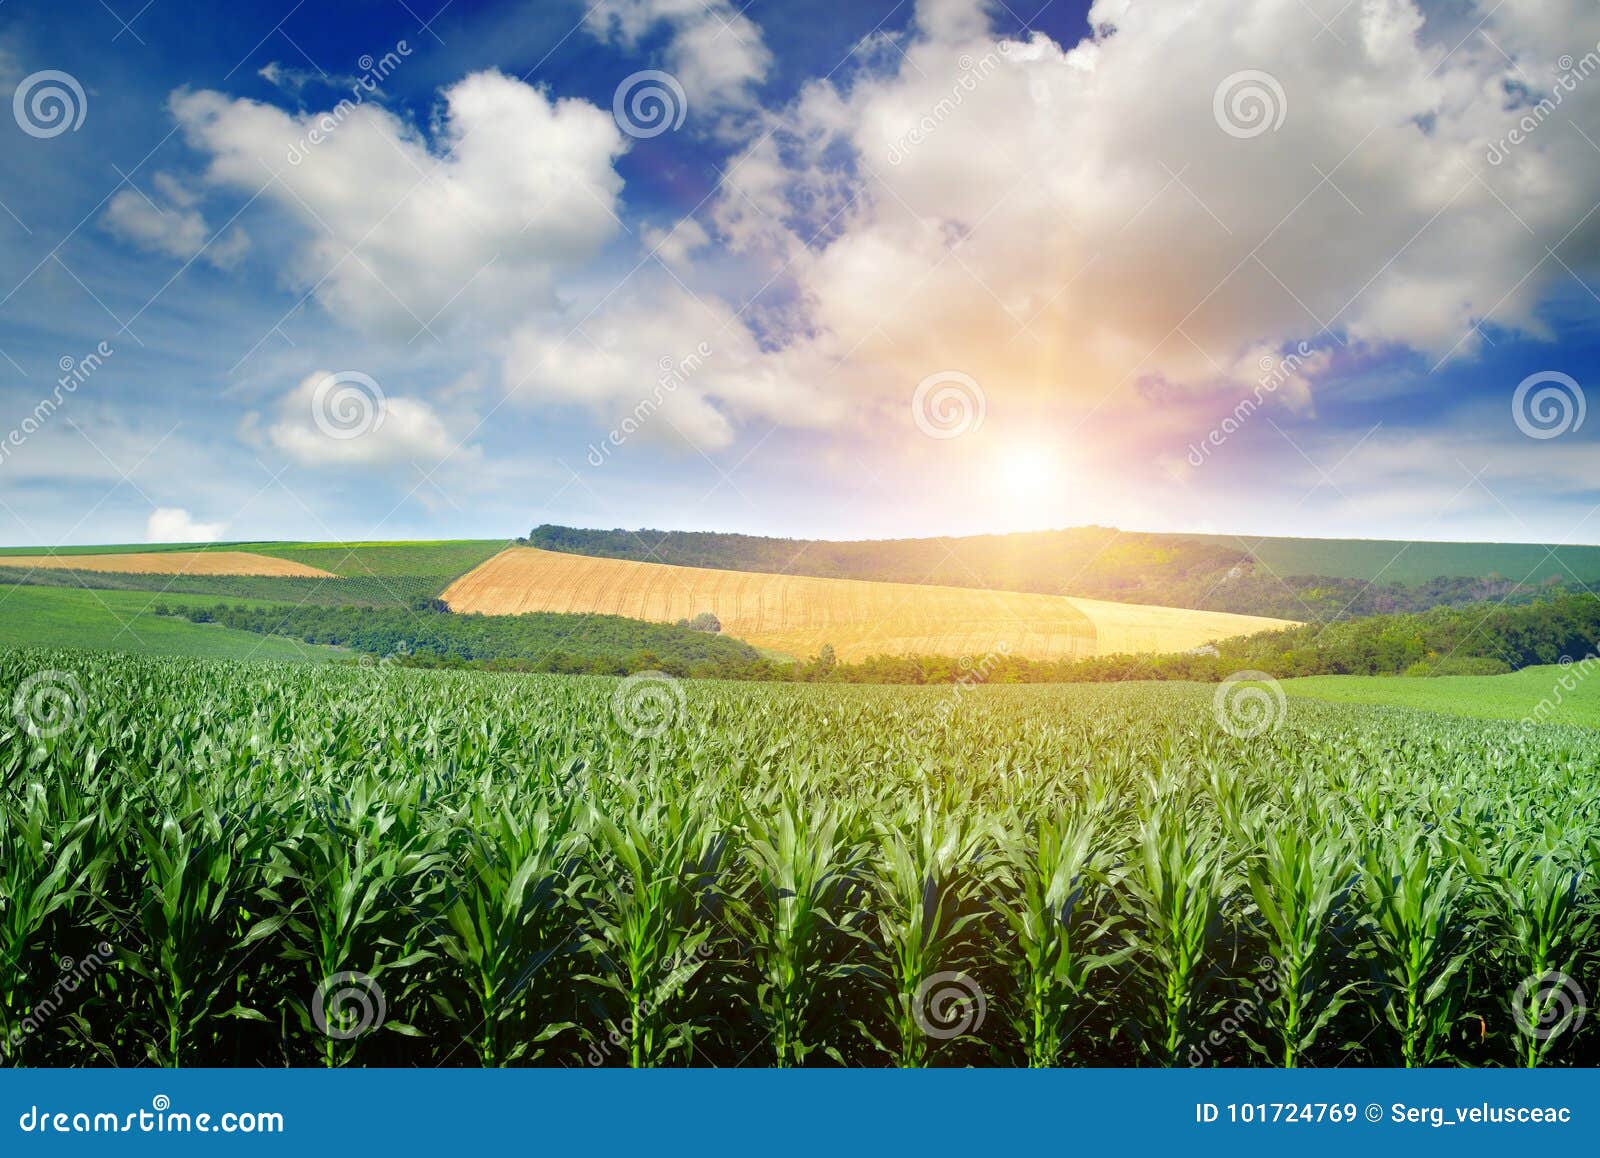 bright sun rises over a field of corn.